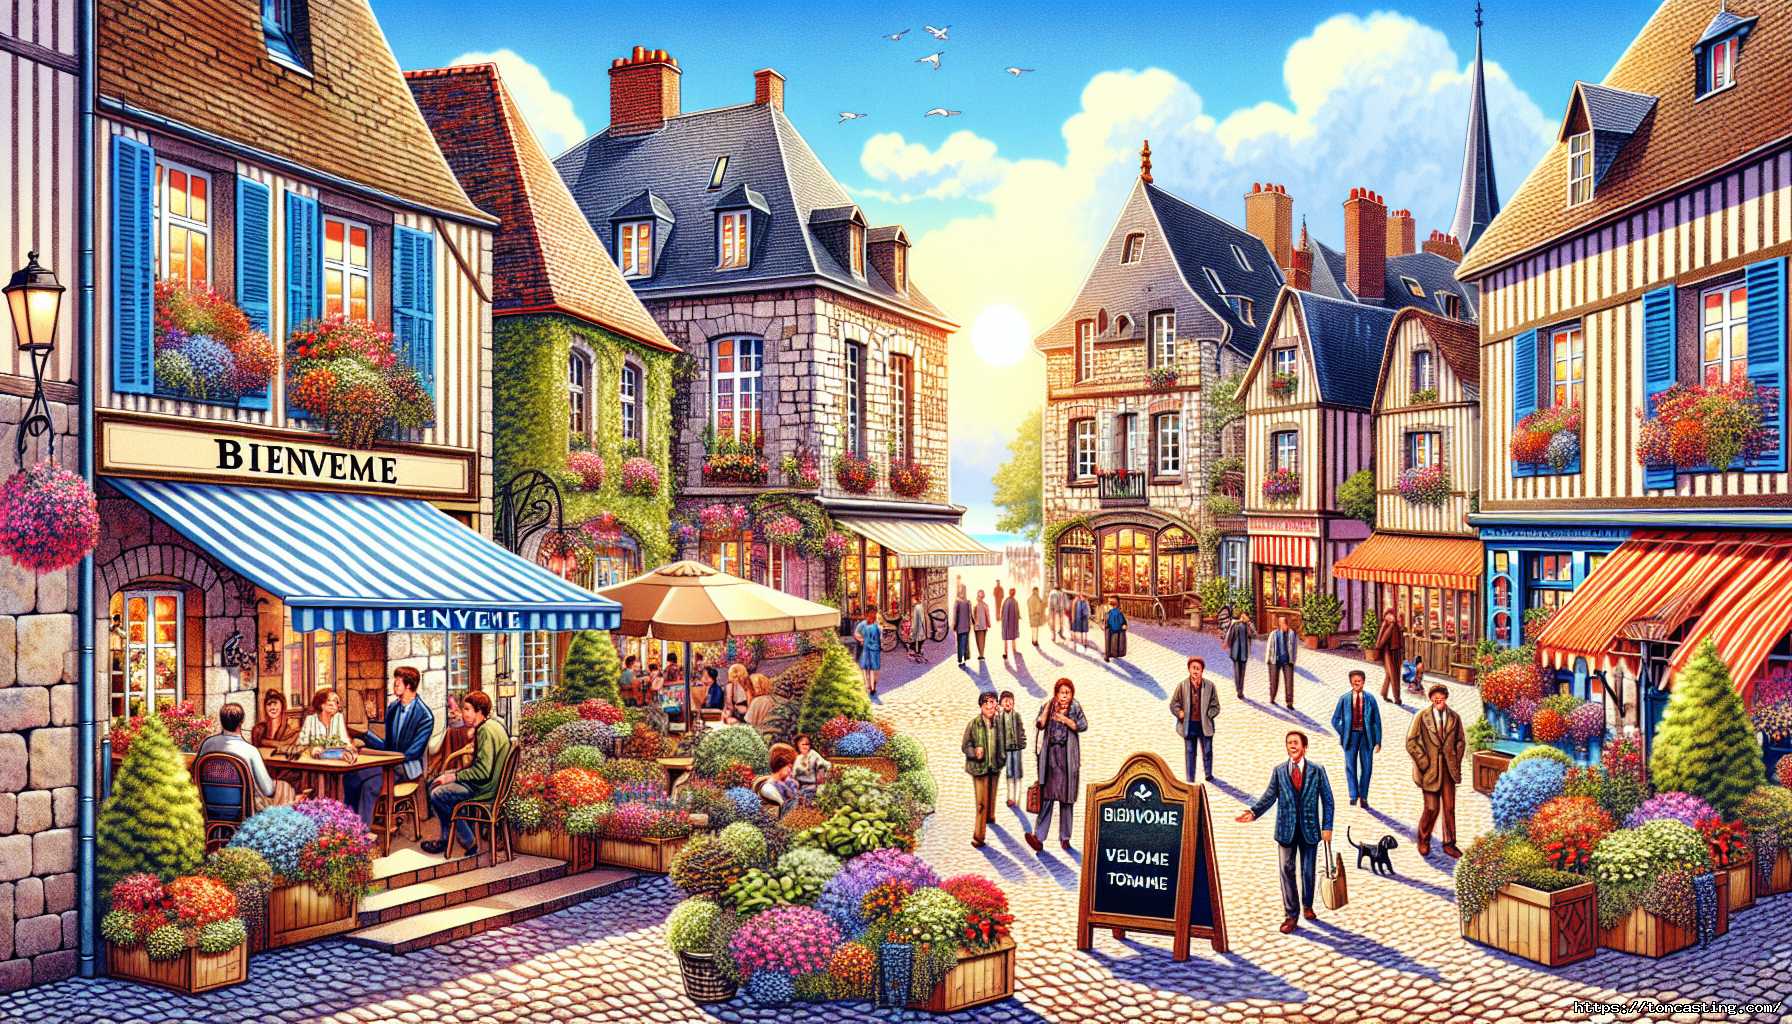 Rue animée dans un village pittoresque avec des devantures de magasins et des terrasses.